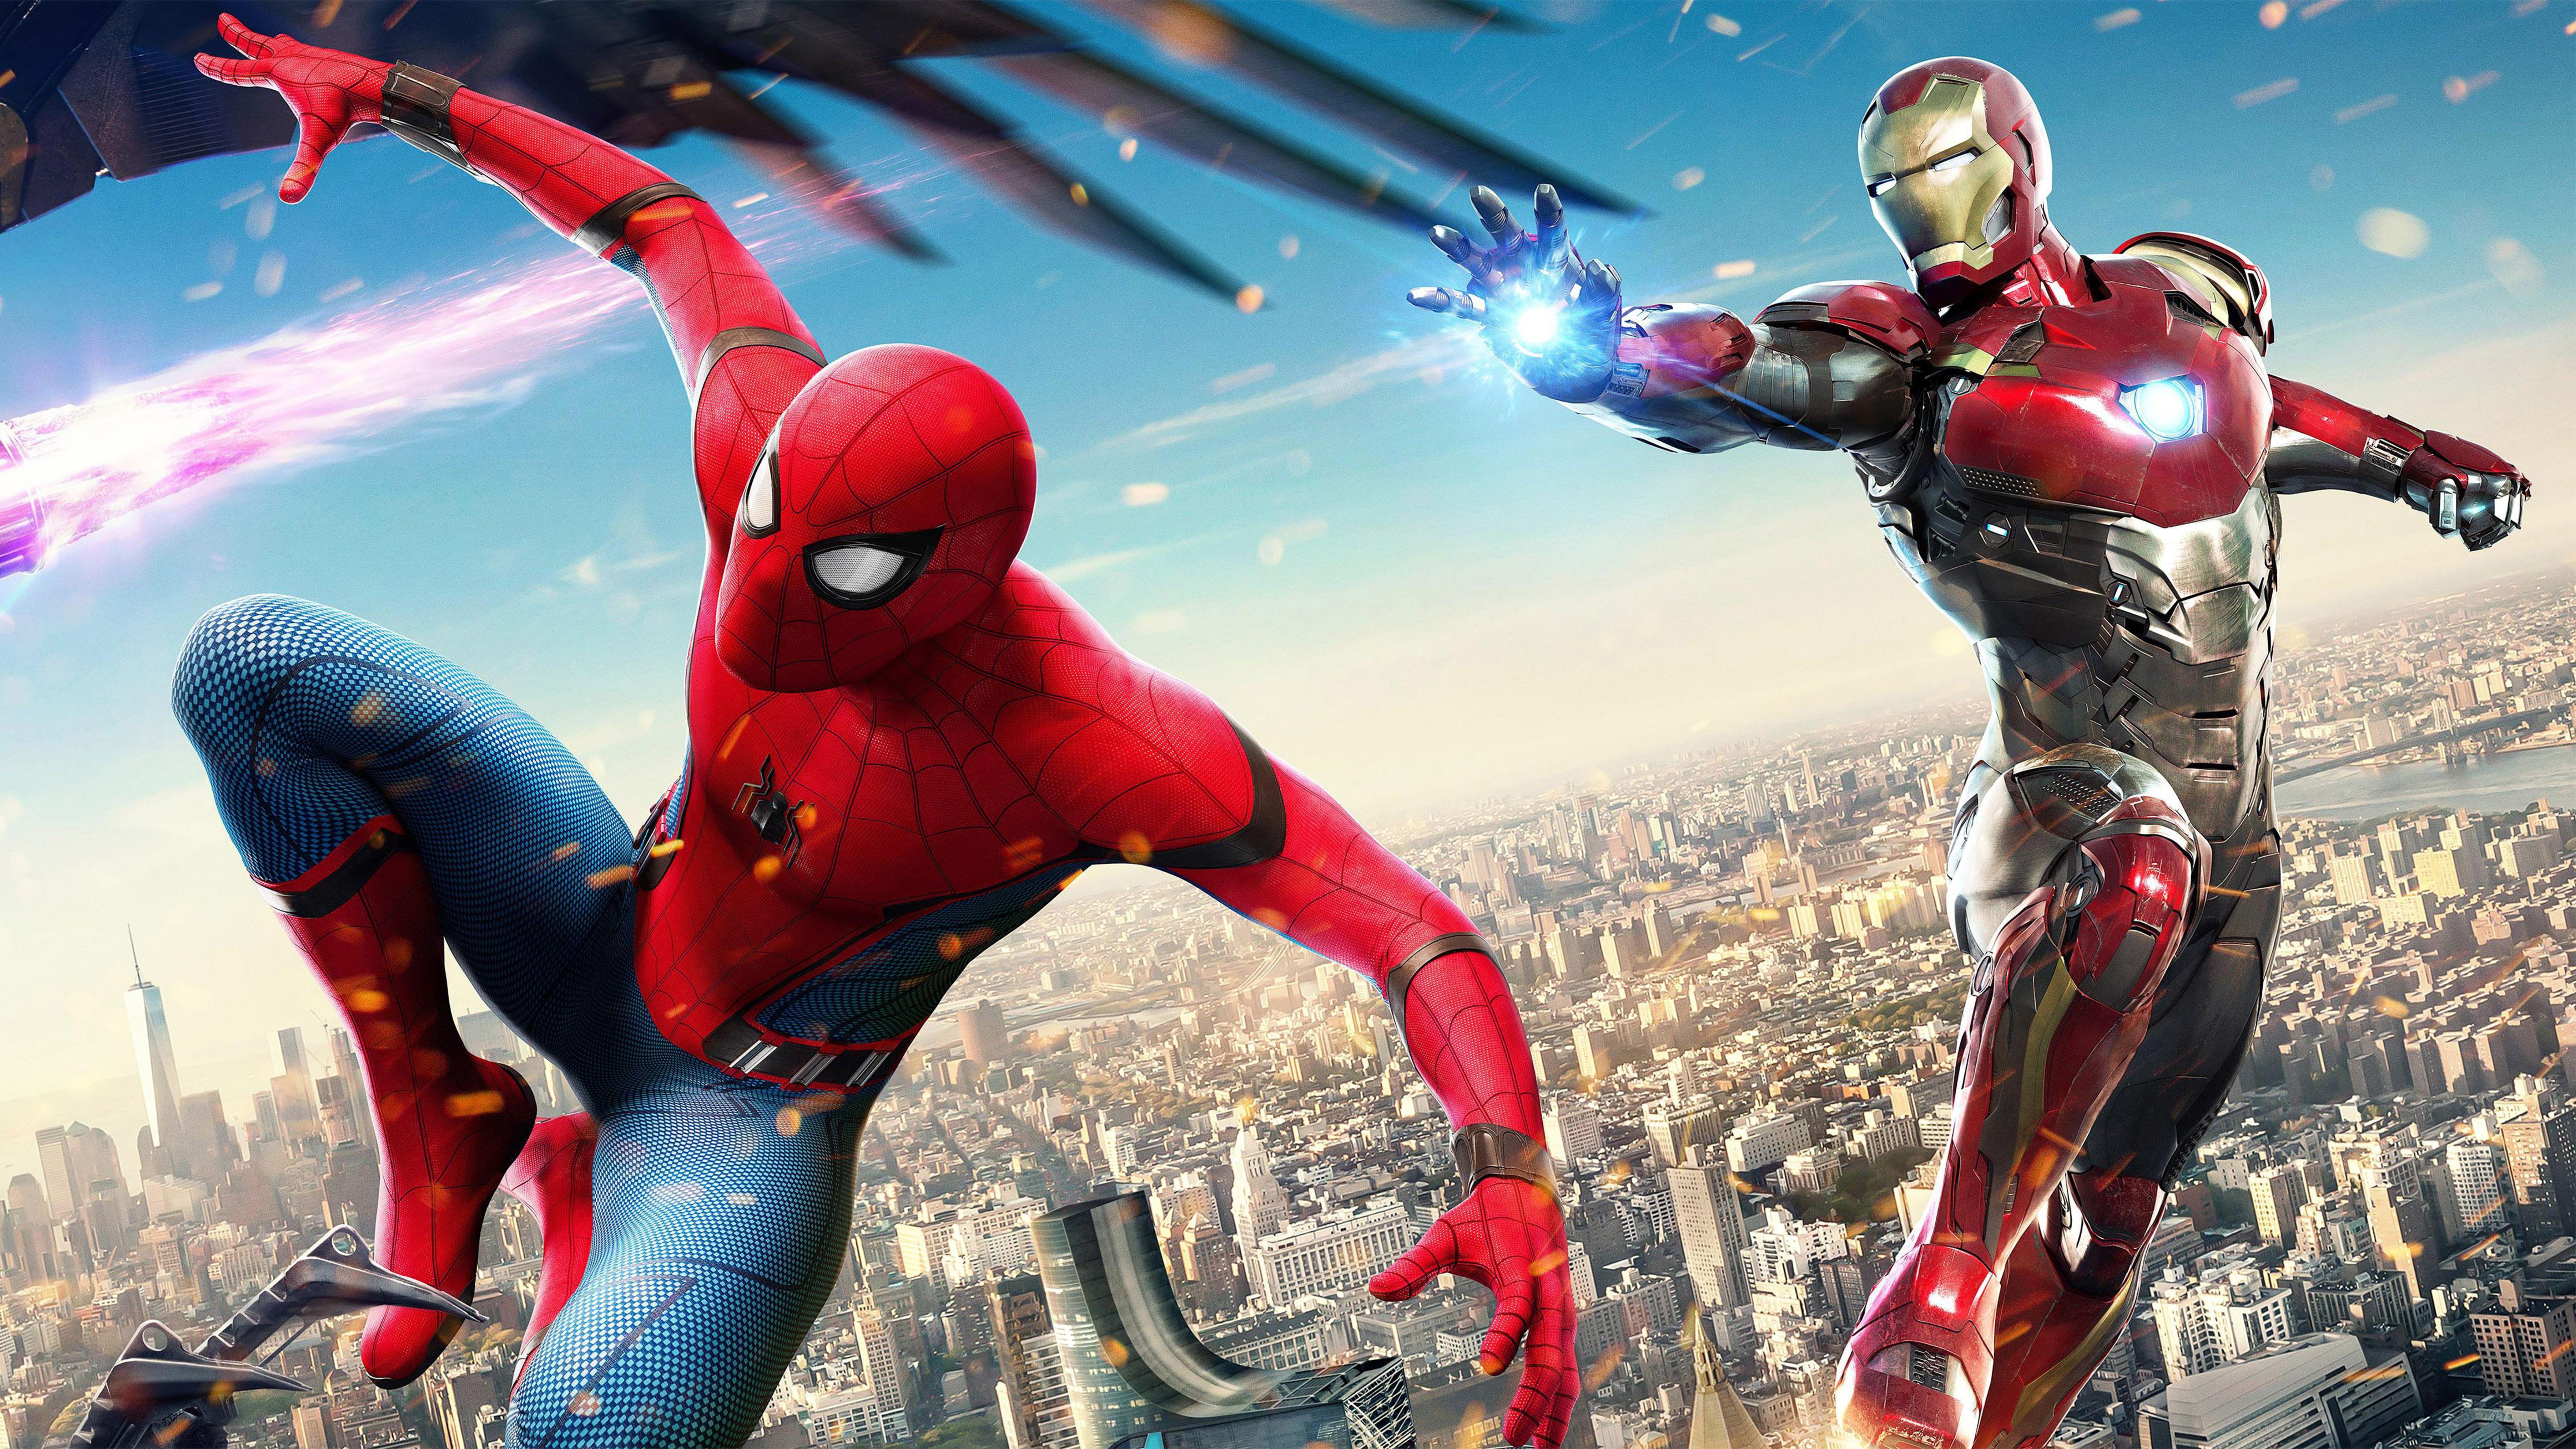 Wallpaper Iron Man, Spider Man: Homecoming, HD, 4K, Movies